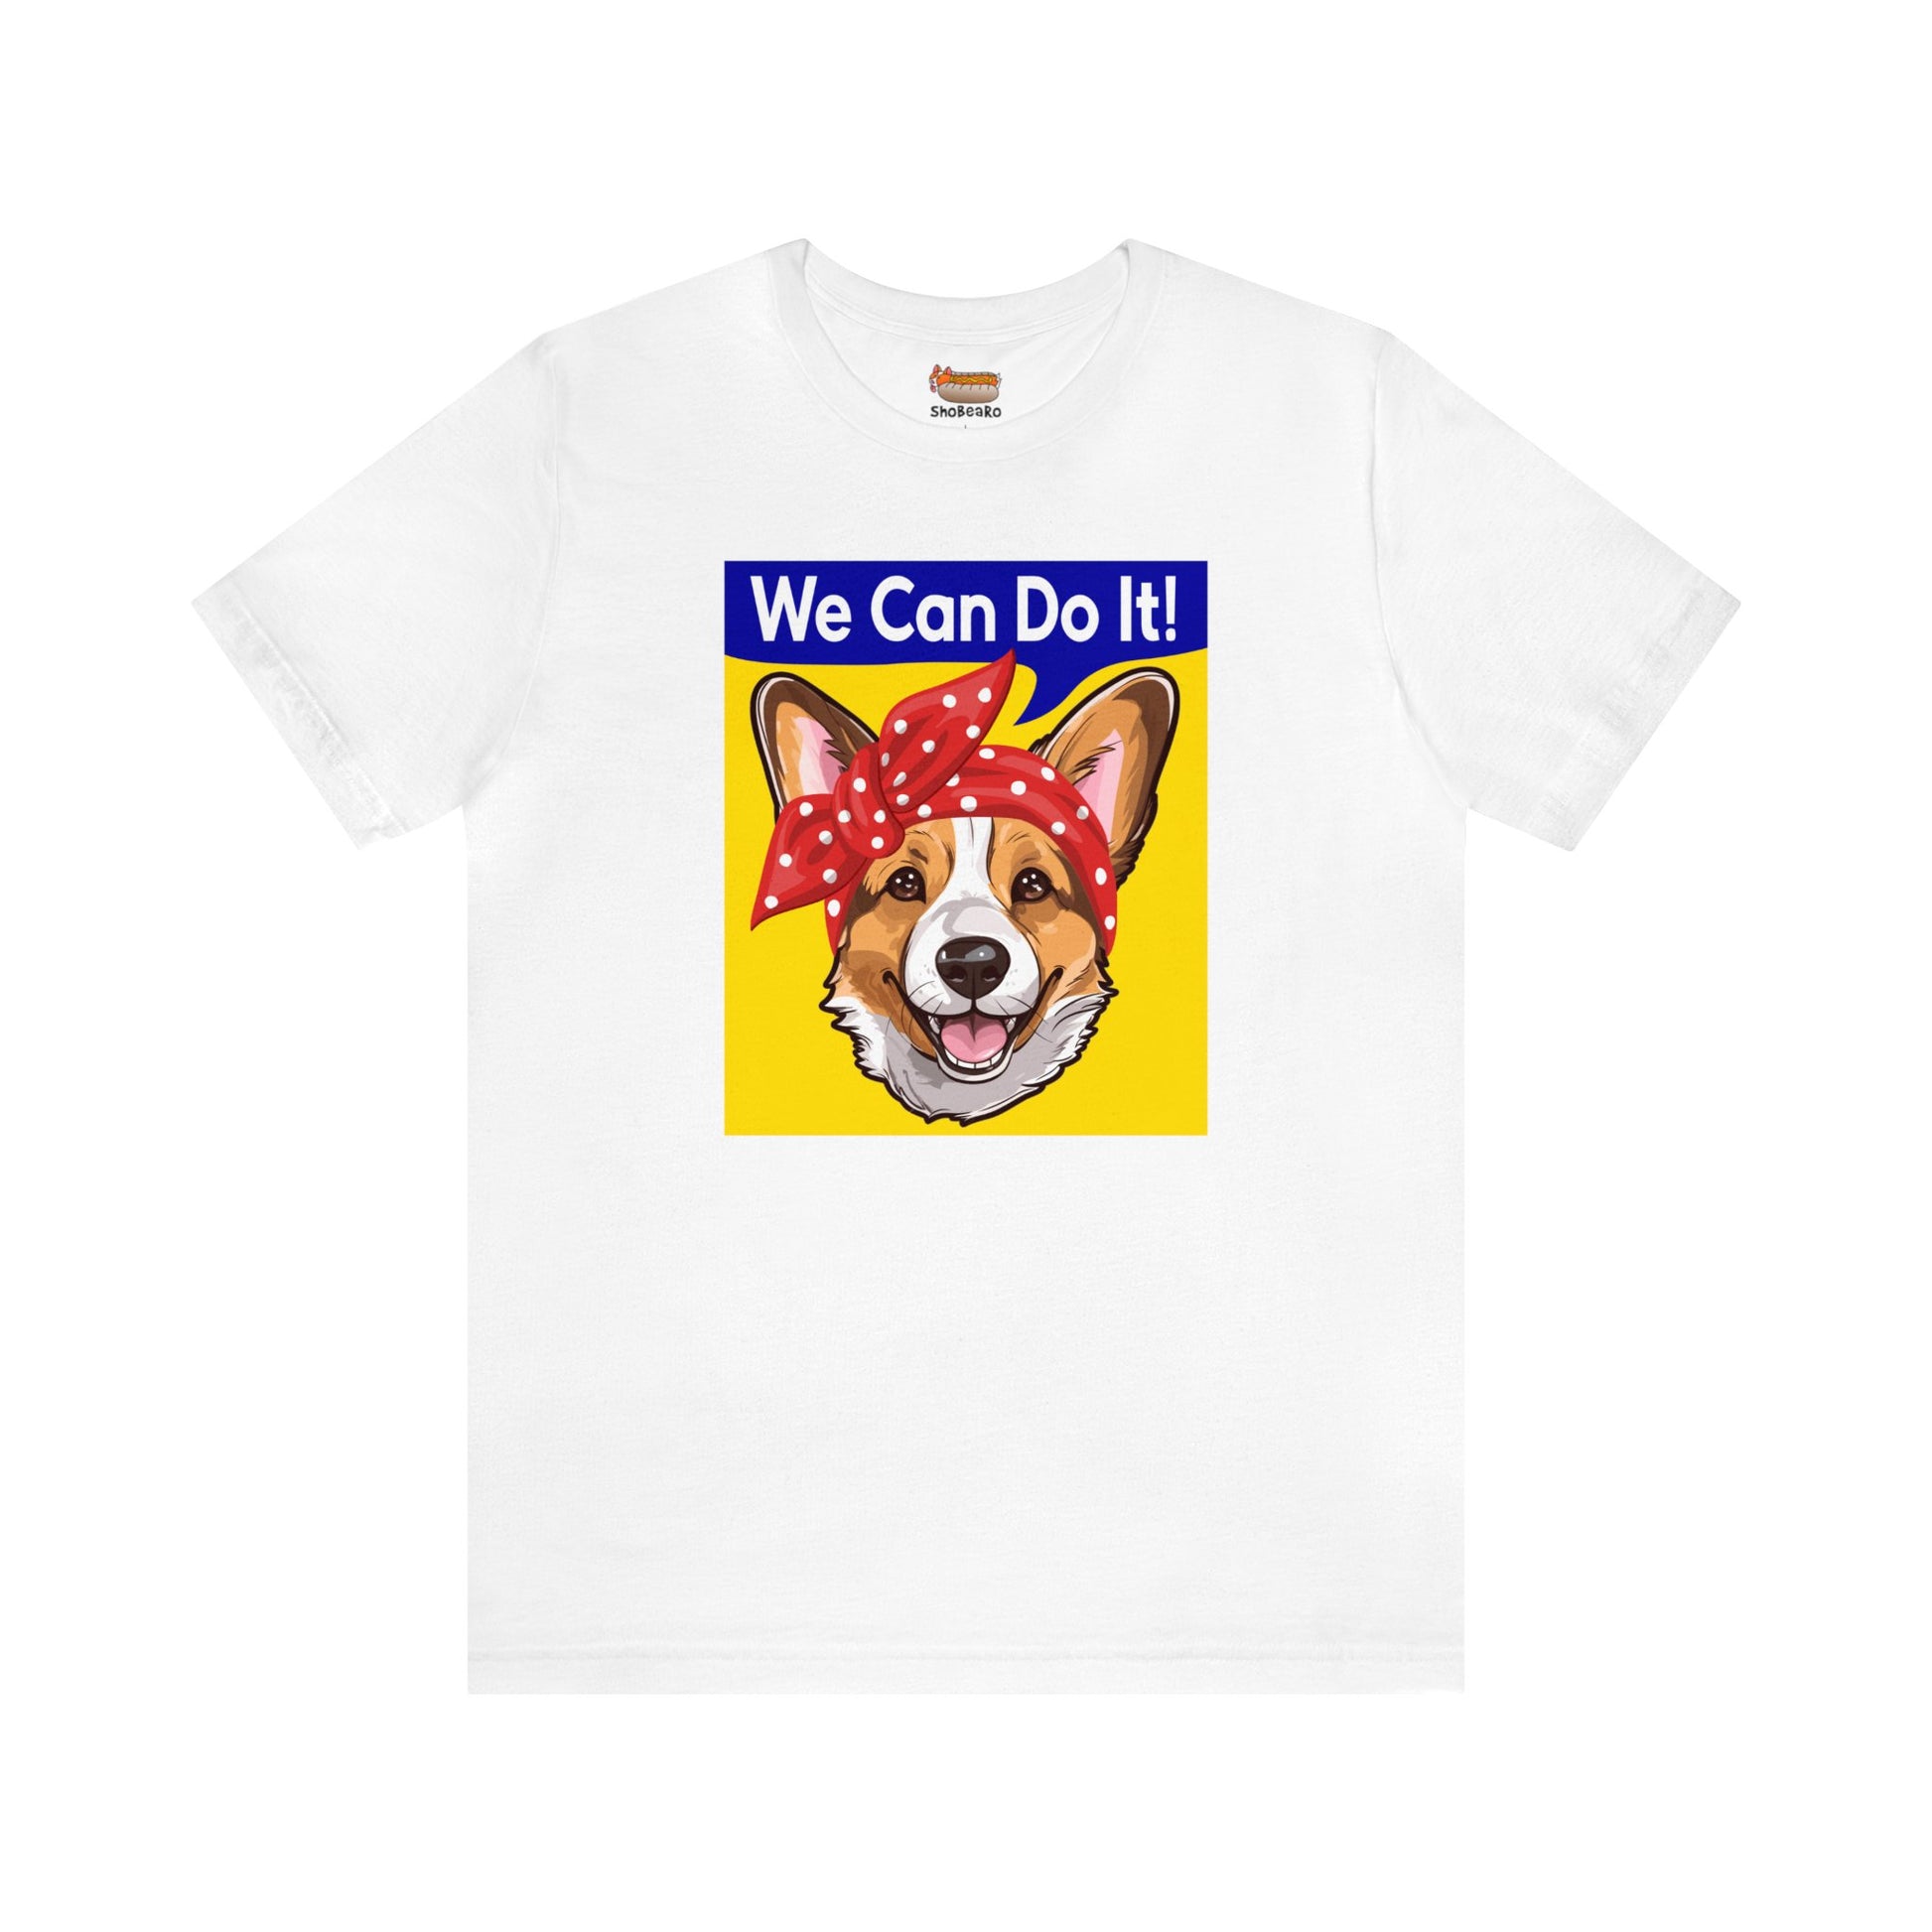 white corgi t-shirt rosie the riveter women's rights shirt gift for her dog lover